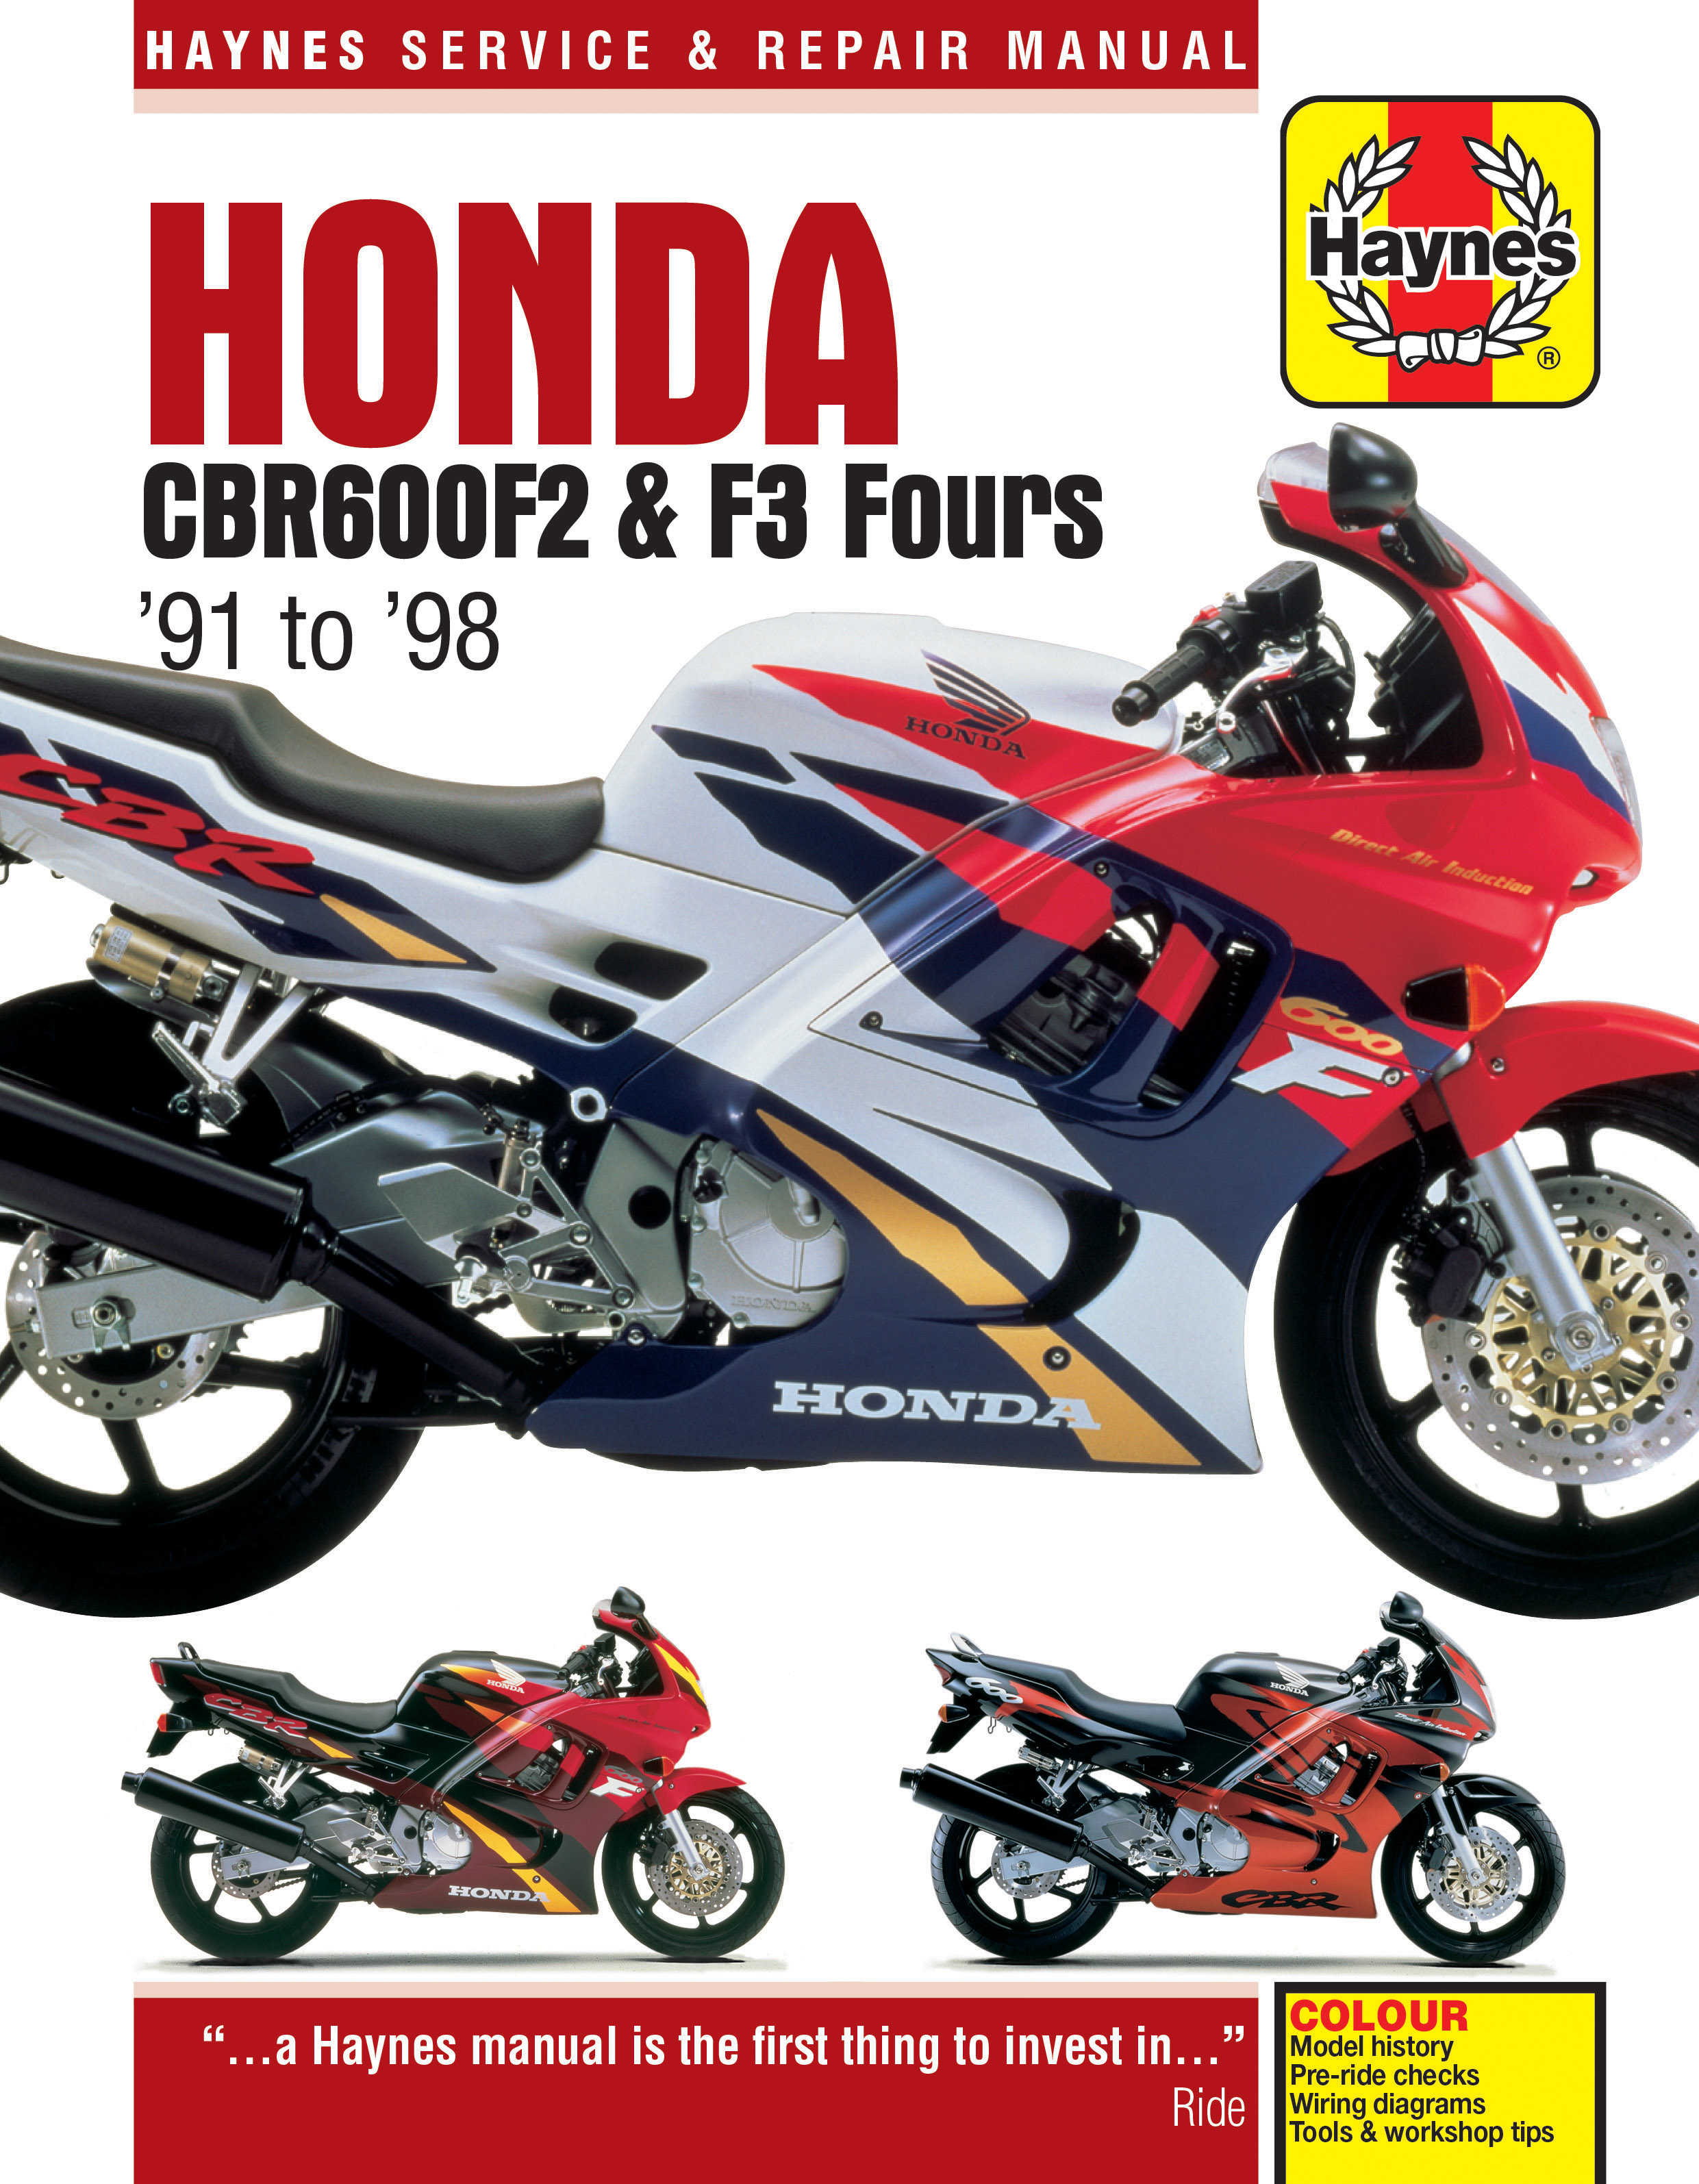 07-12 Haynes Manual 5572 Honda CB600 & CBR600F 